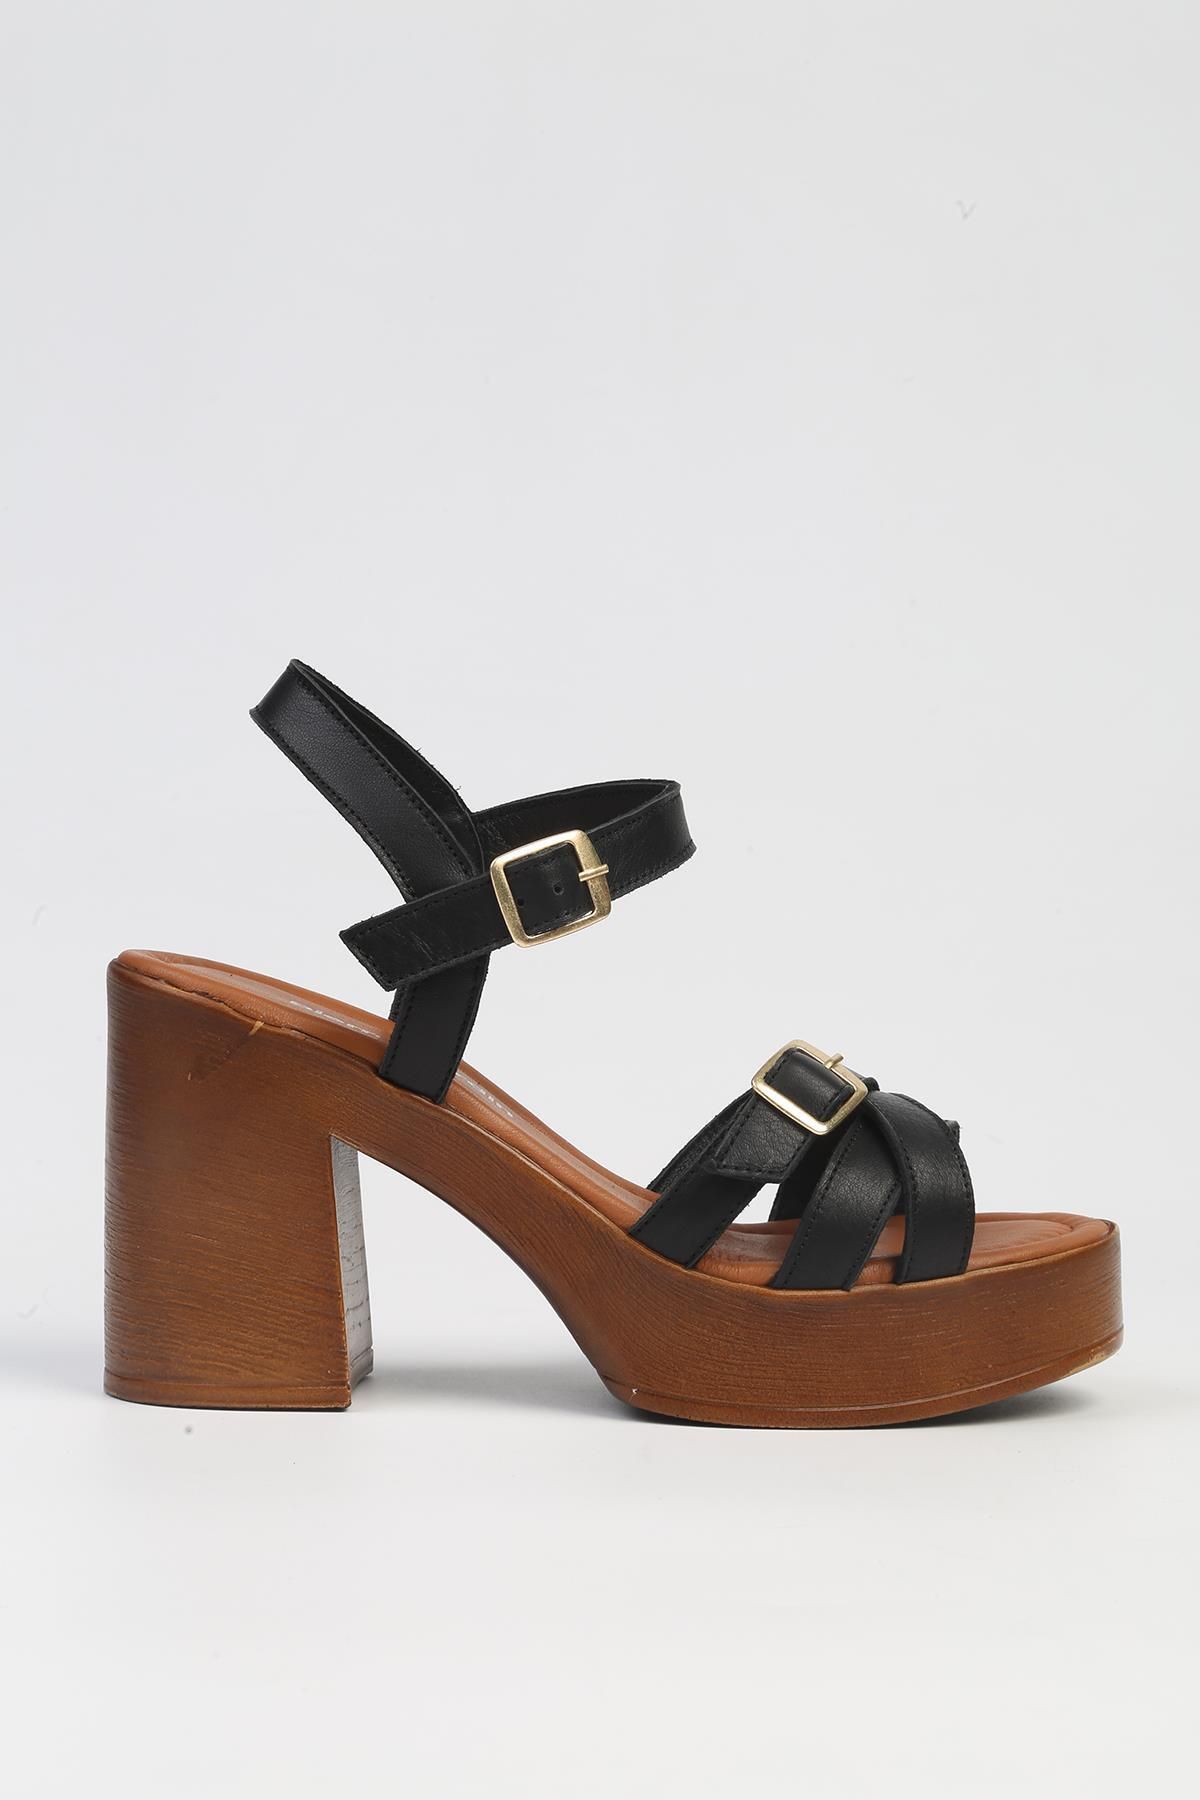 Pierre Cardin ® | PC-7236 - 3807 Siyah-Kadın Topuklu Ayakkabı